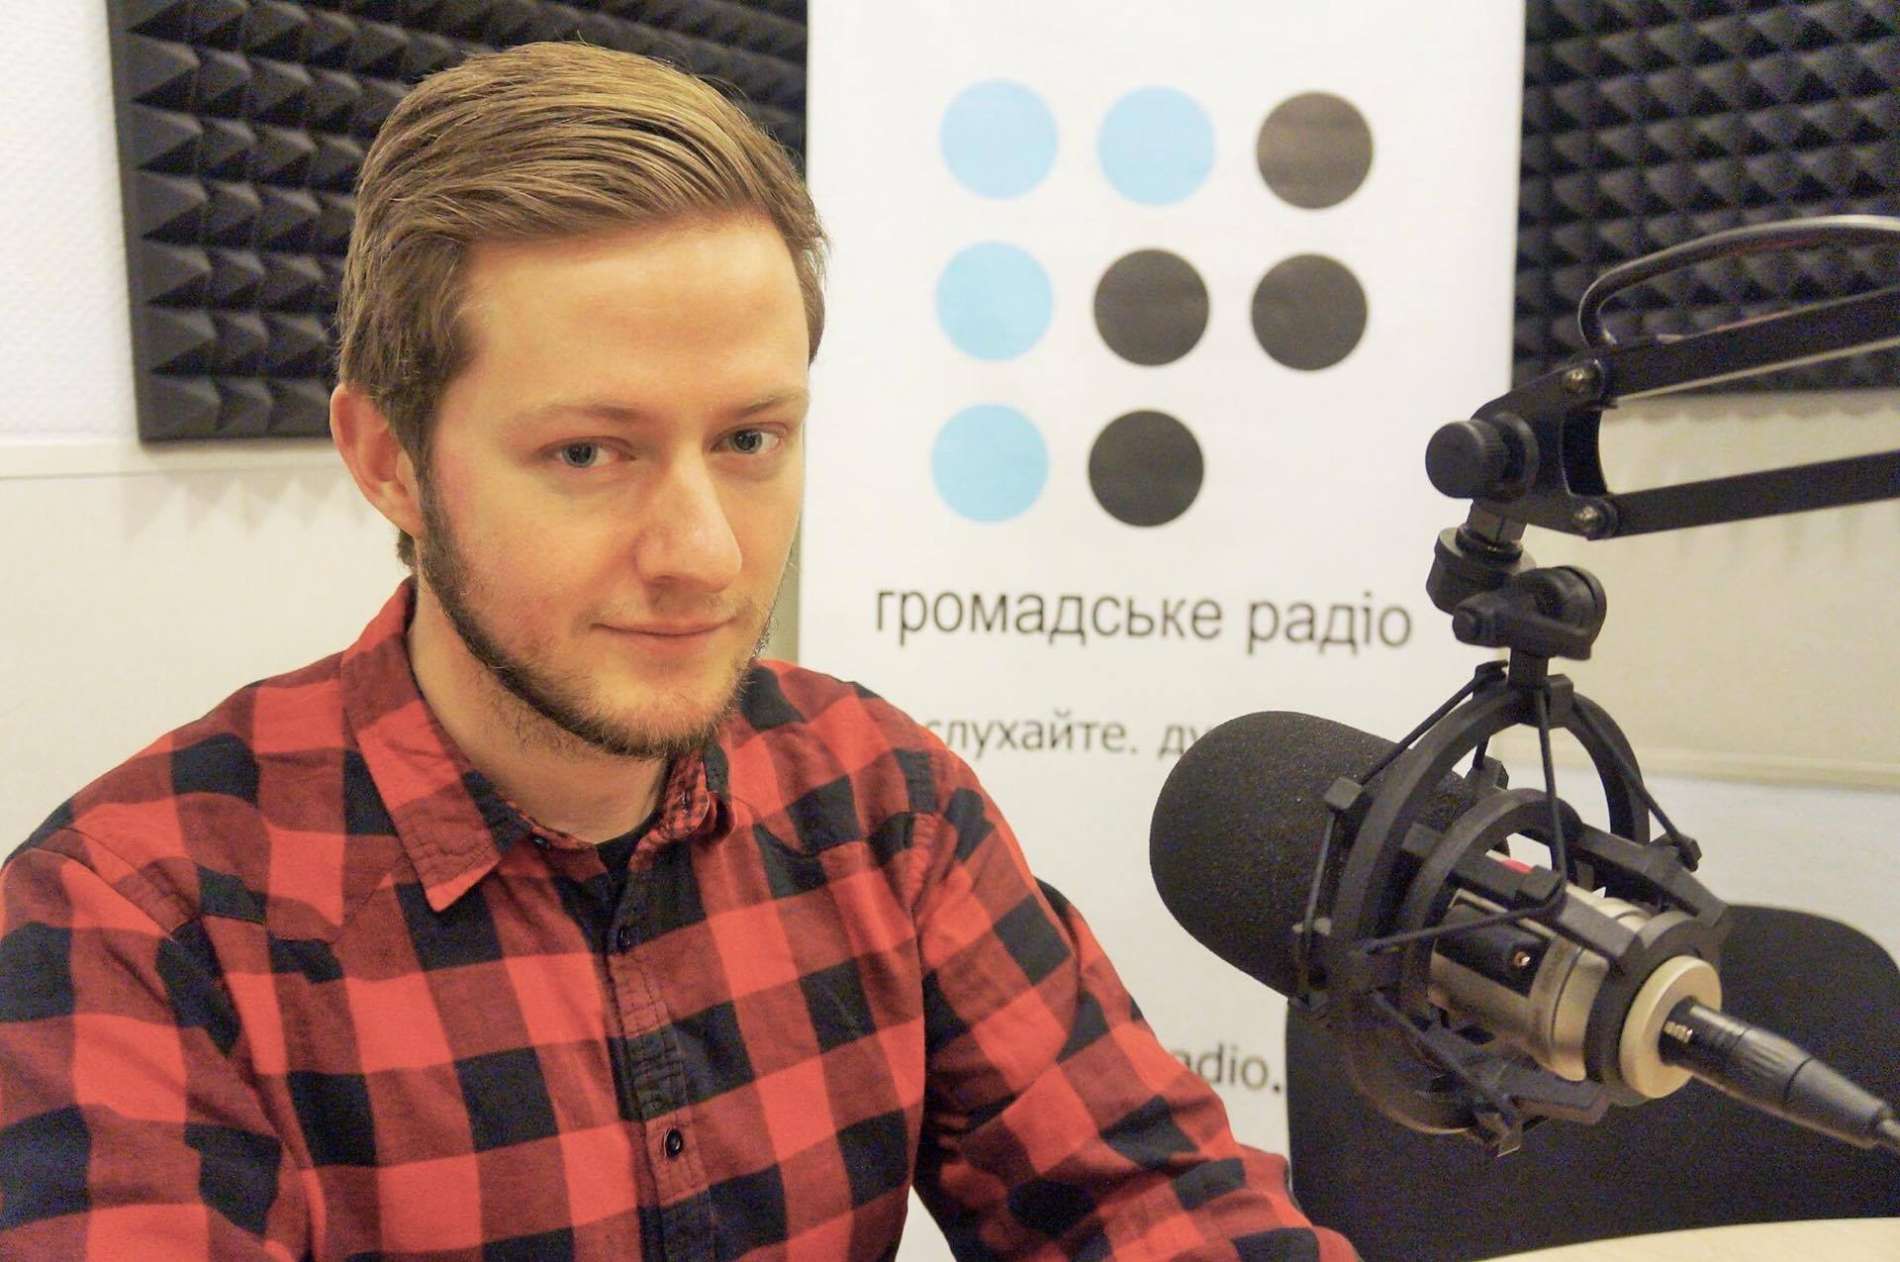 Євробачення — можливість для українських артистів з'явитися на телебаченні